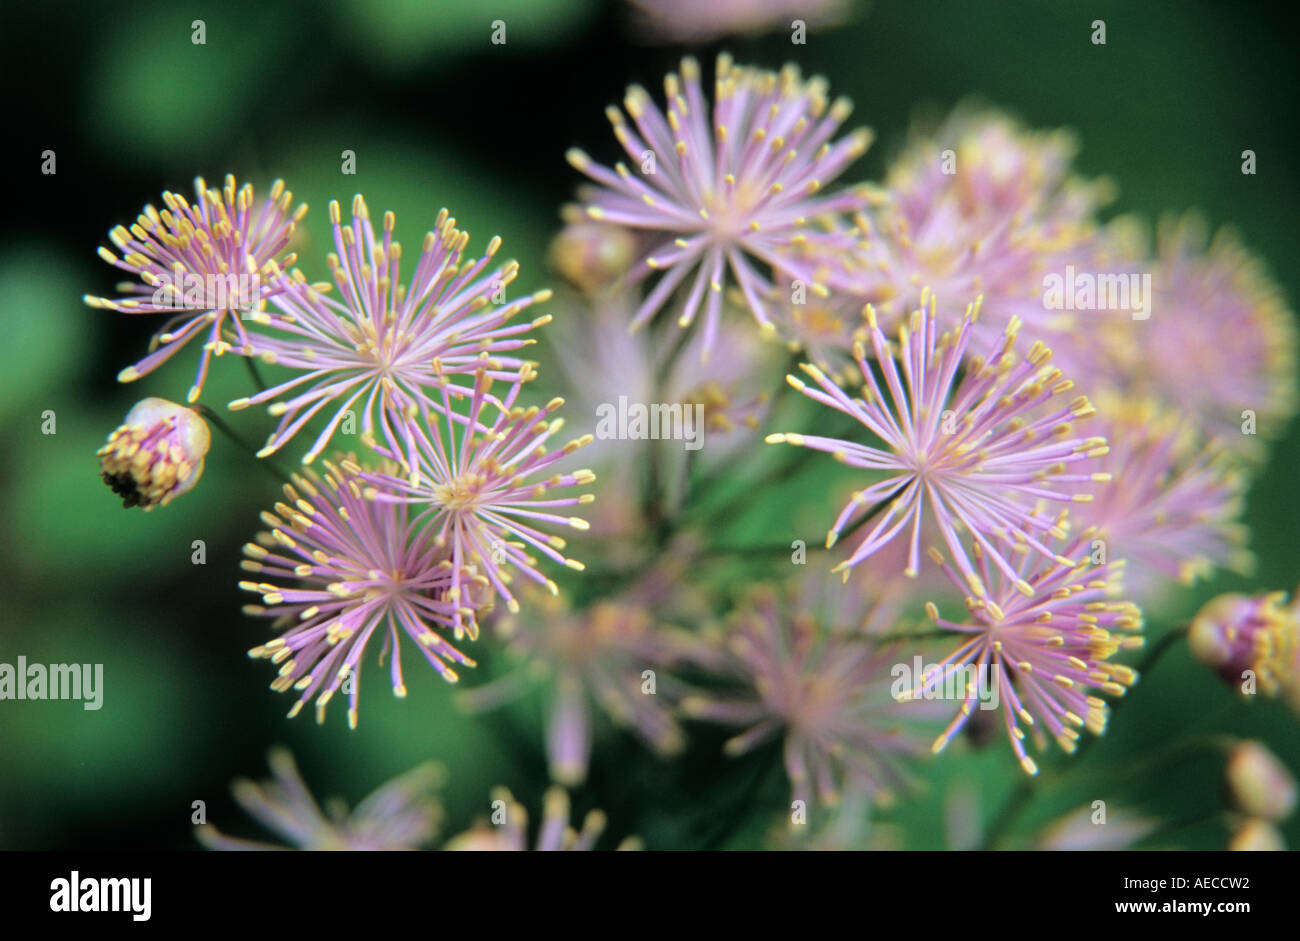 French Meadow rue Thalictrum aquilegifolium flowers in close-up Stock Photo